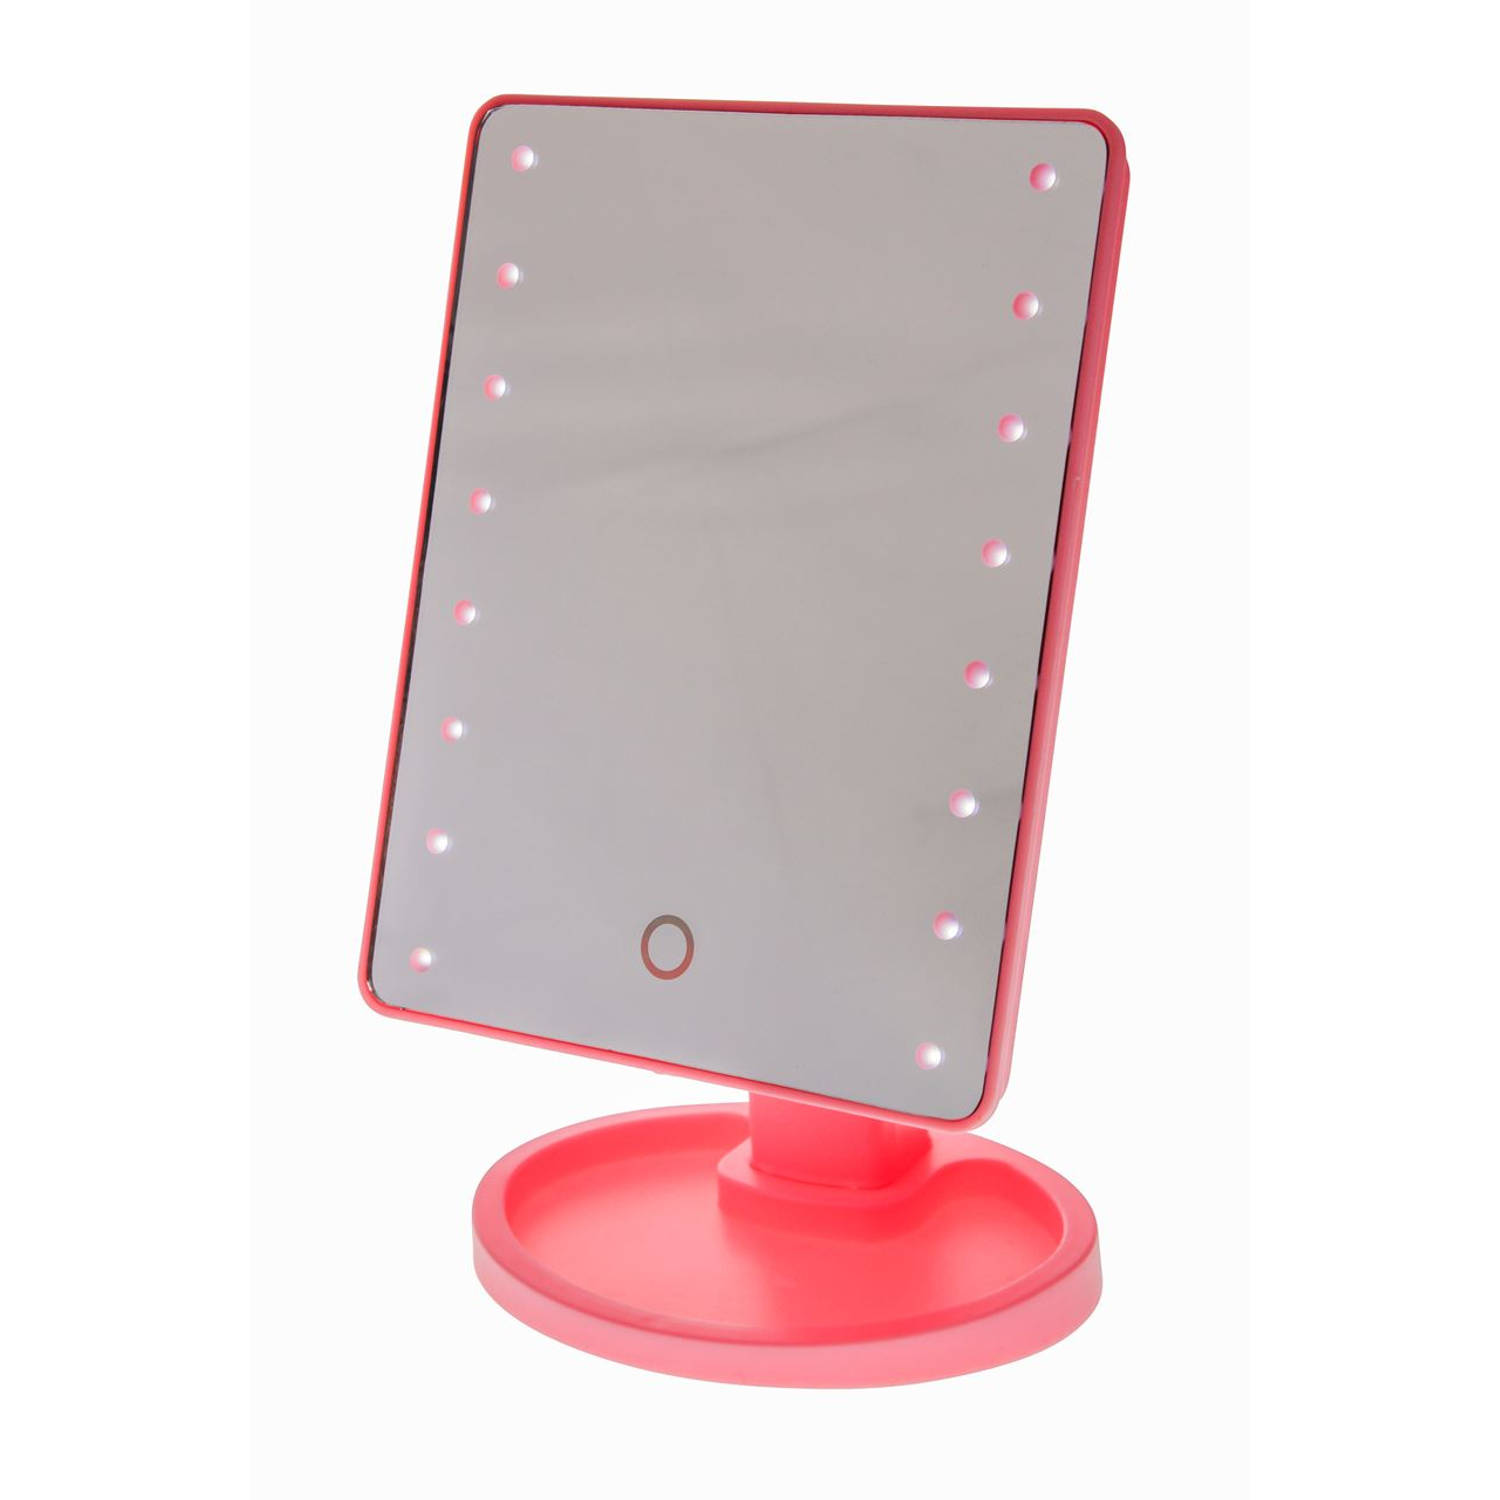 Sluier Purper Ziekte Touch Screen Make-Up Spiegel met LED verlichting - Roze | Blokker